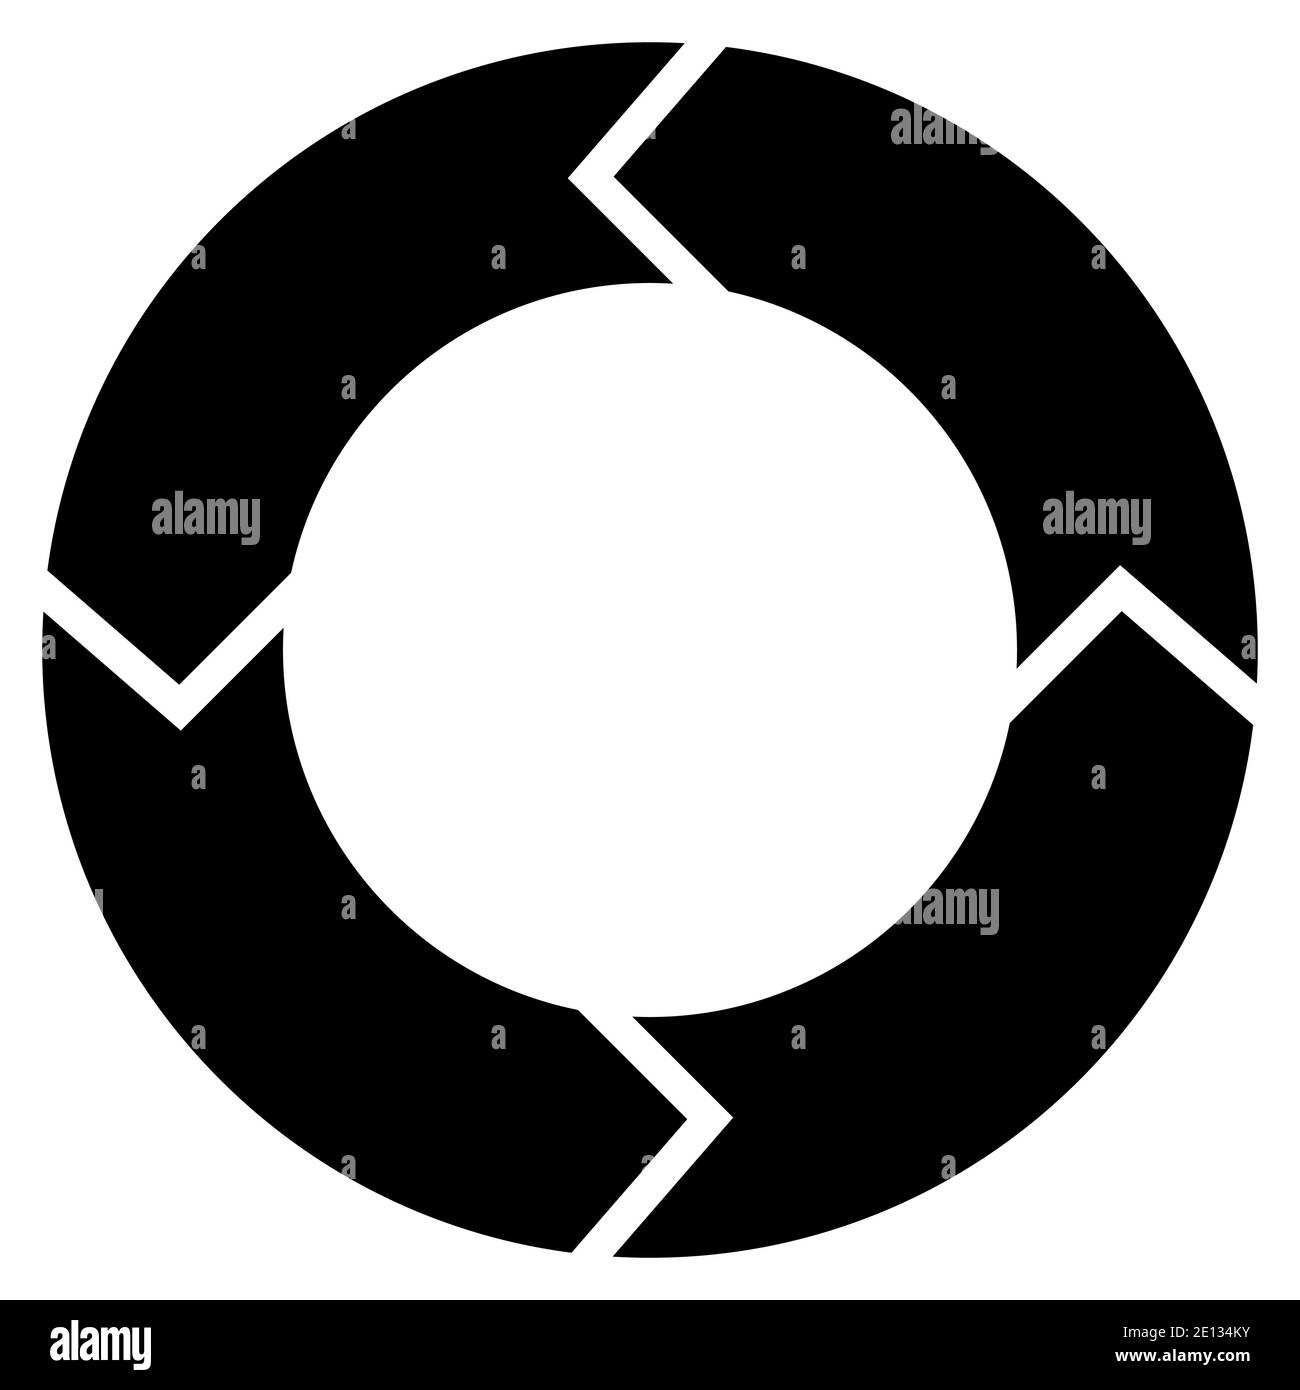 Kreisdiagramm mit Rotation, vier Stufen. Schwarz auf weißem Hintergrund. Stock Vektor